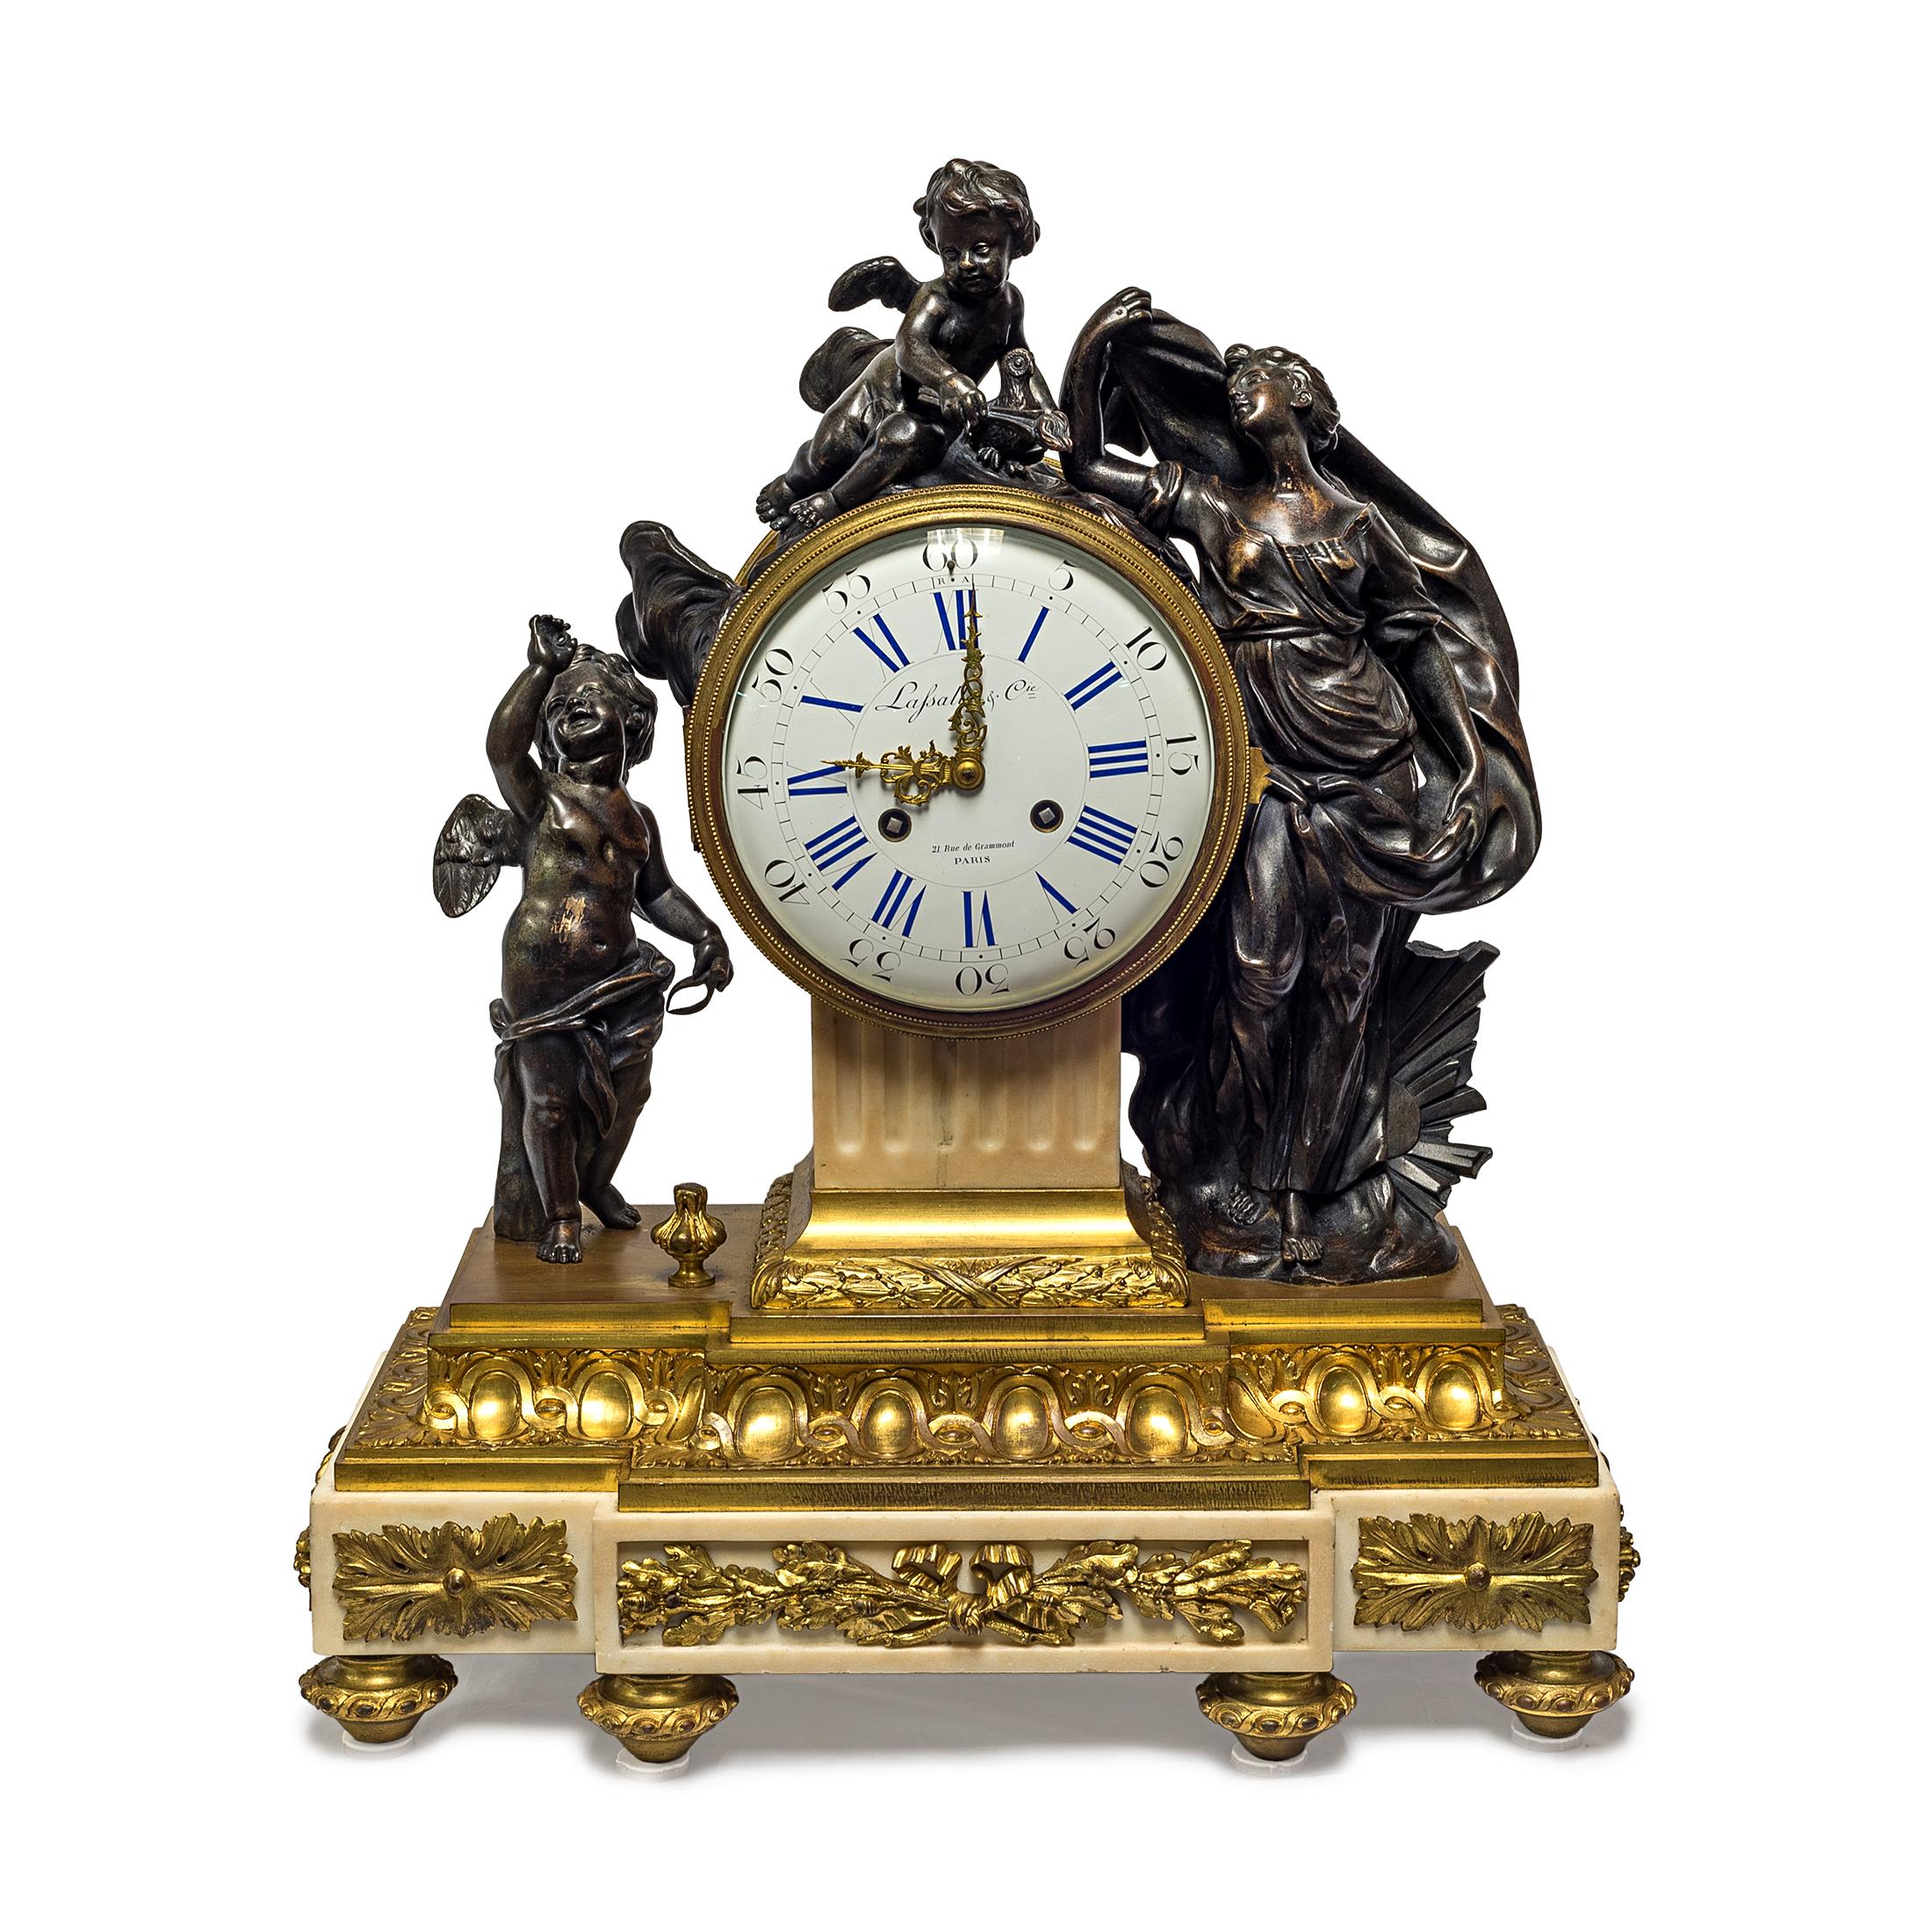 Feine Qualität Louis XVI vergoldet und patiniert Bronze figuralen Kaminsims Uhr der Venus mit Cherubinen.
Feine Qualität Louis XVI vergoldet und patiniert Bronze figuralen Kaminsims Uhr der Venus mit Cherubinen auf Marmorsockel. Uhrwerk von